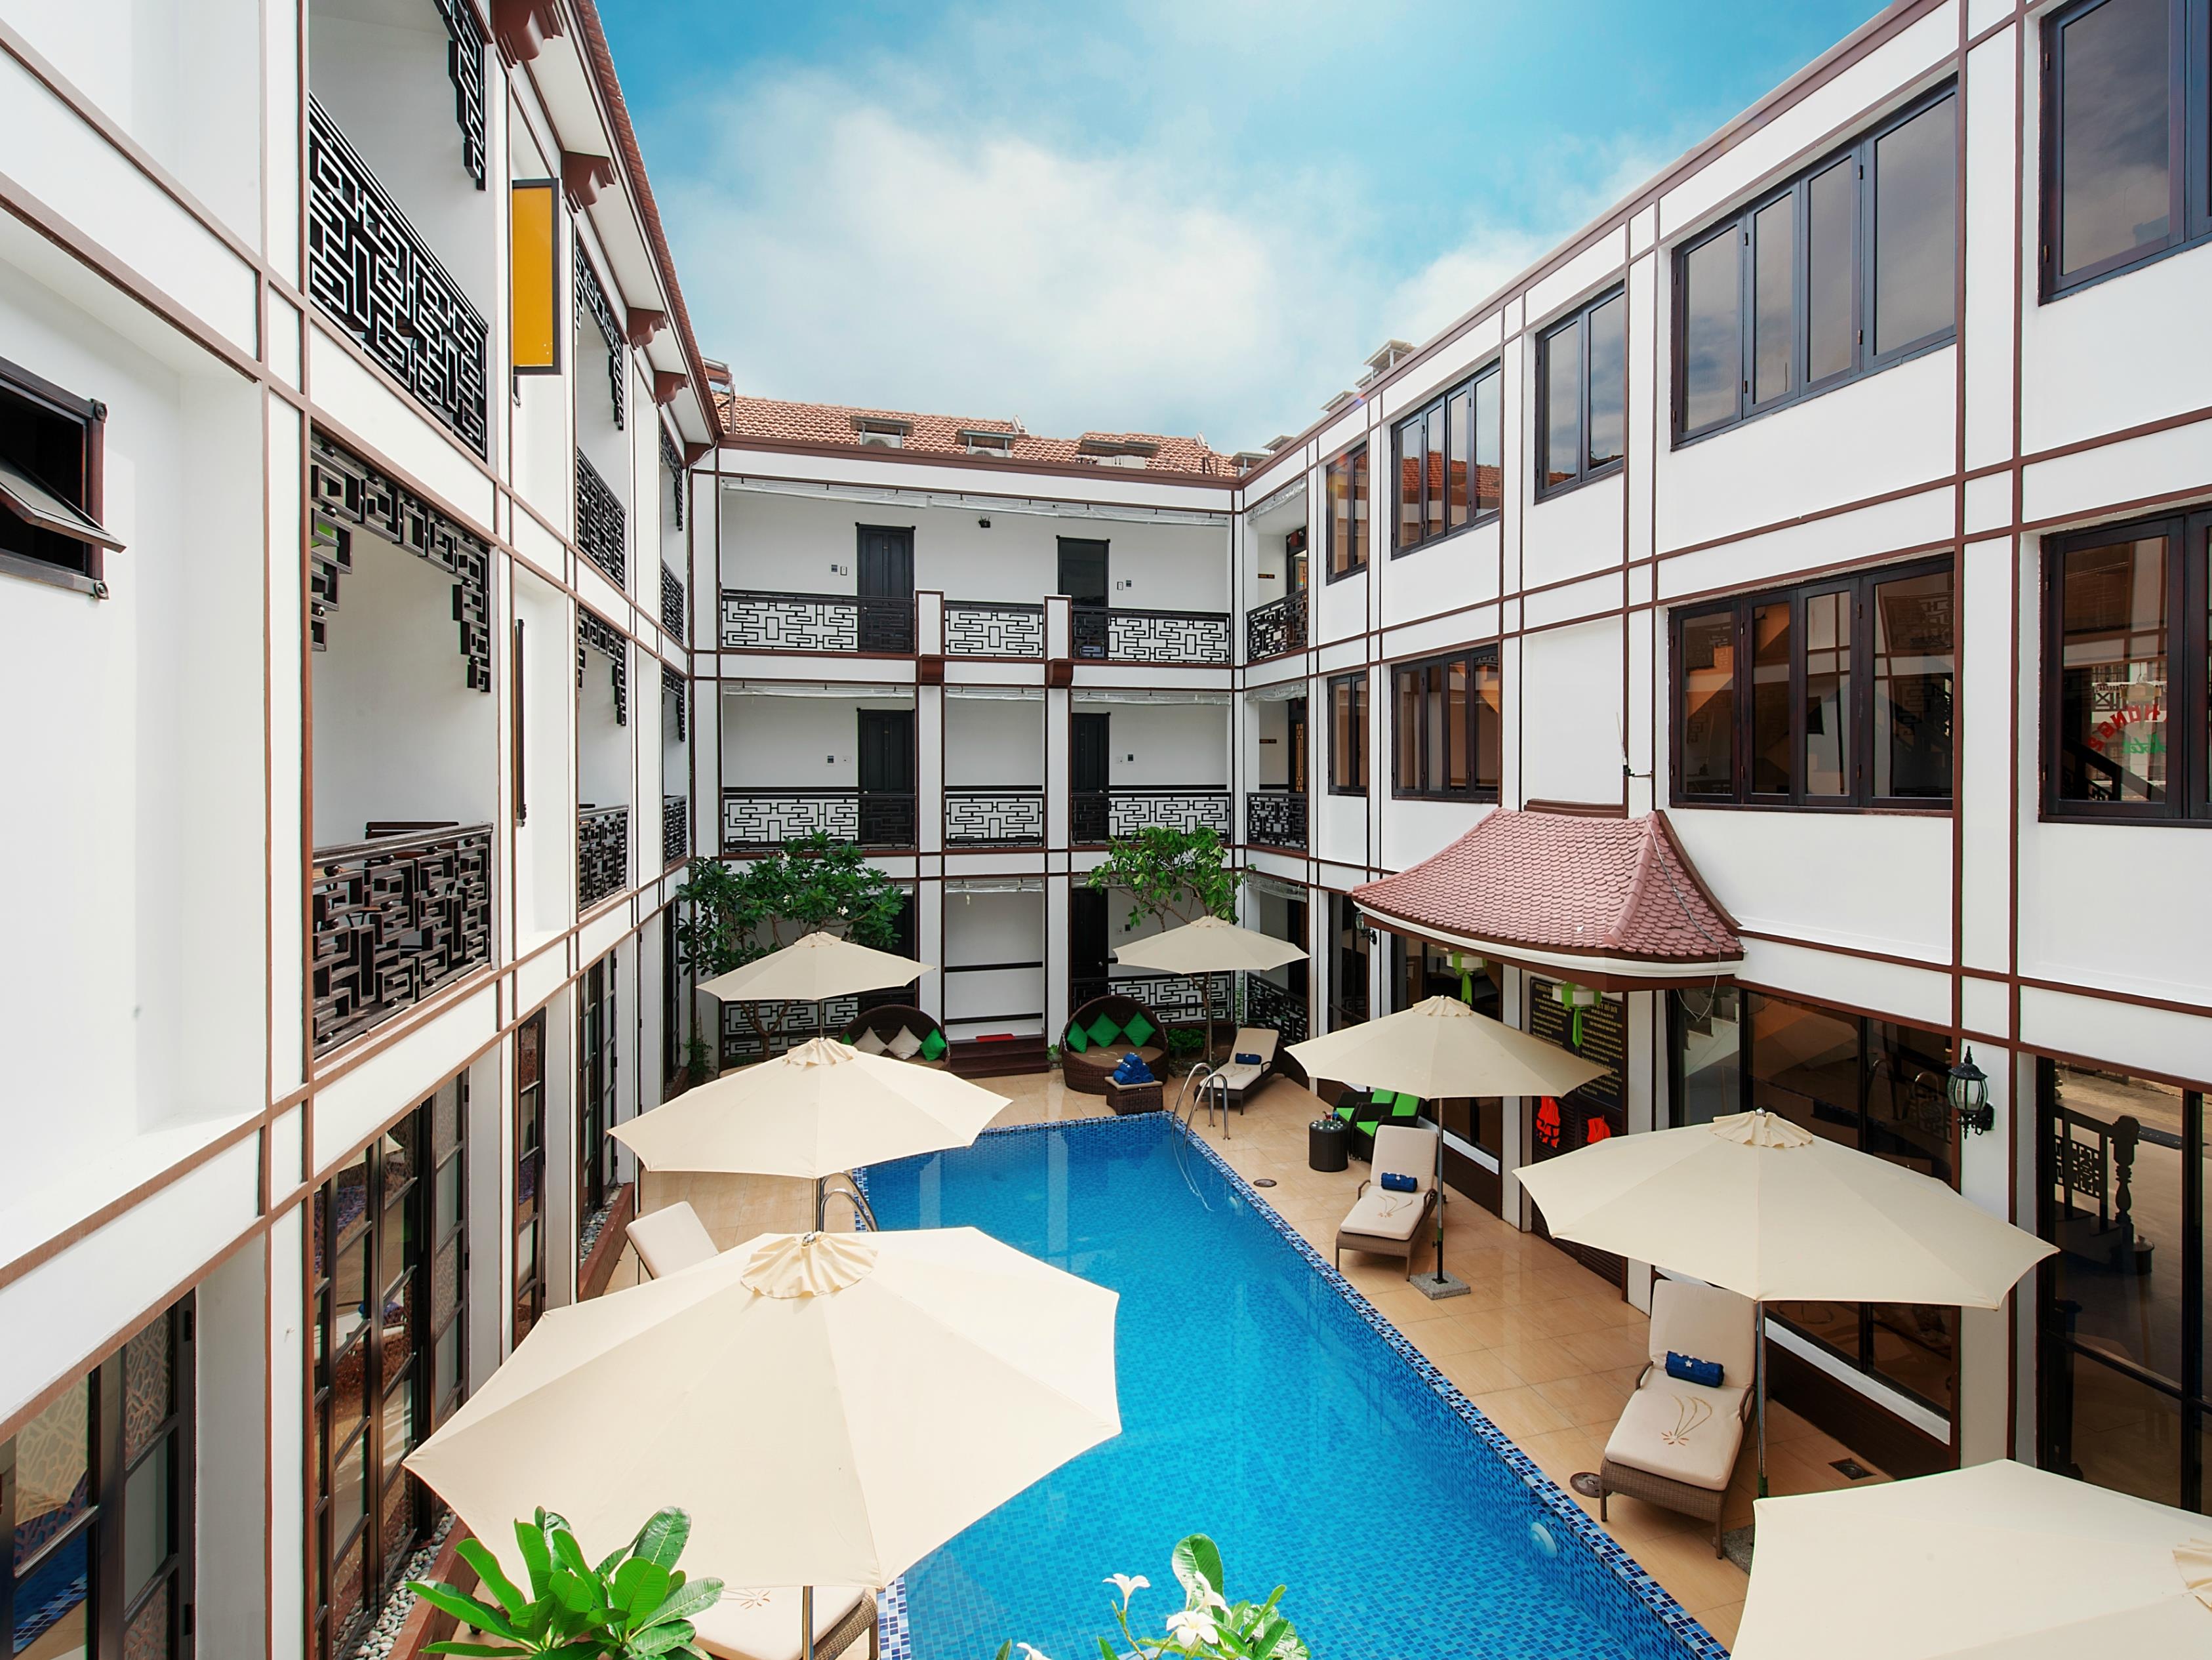 Vinh Hung 2 Hotel - Hotell och Boende i Vietnam , Hoi An